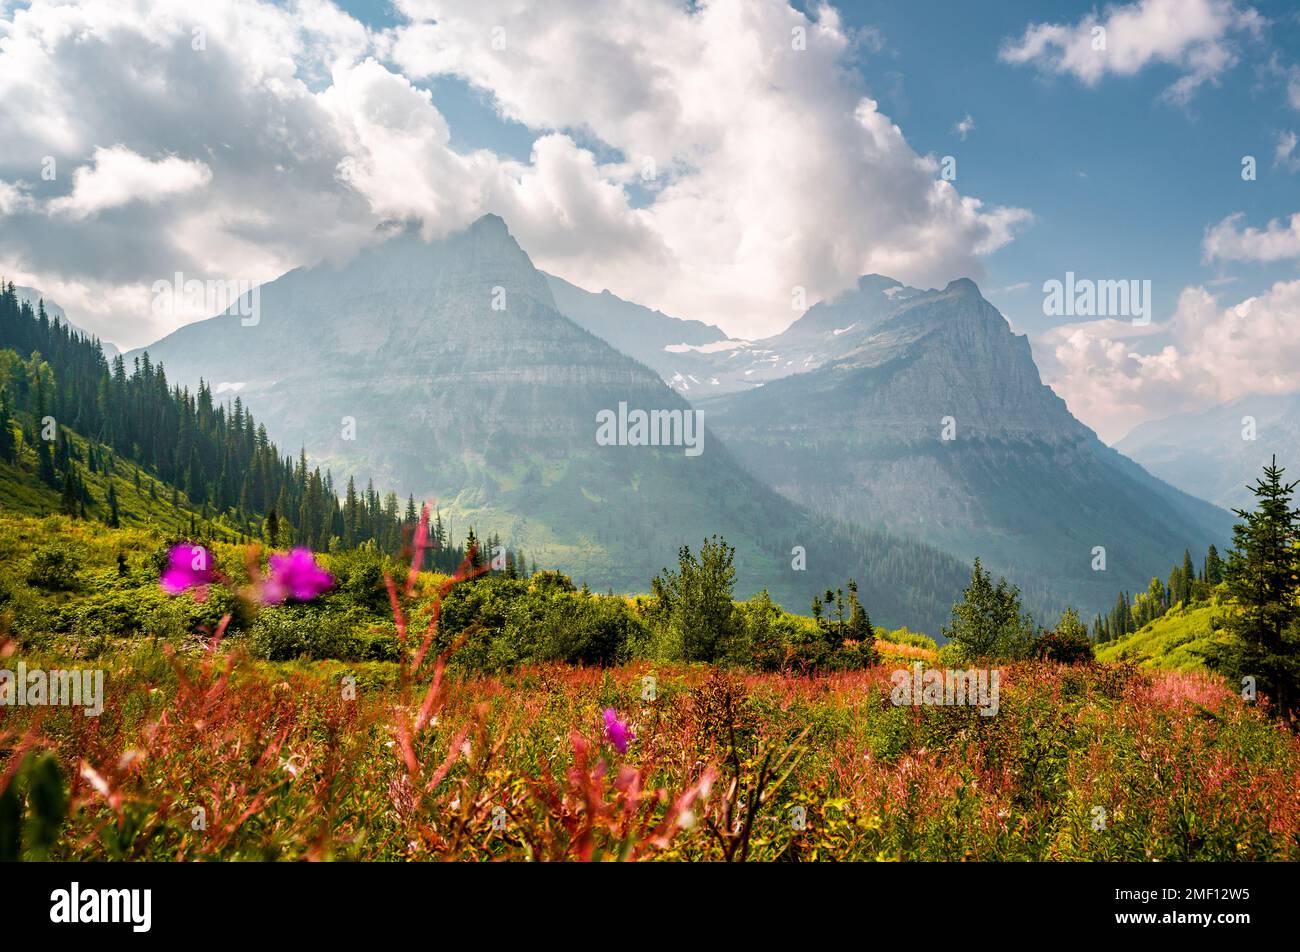 Der Glacier-Nationalpark bietet im Spätsommer einen Ausblick auf die Landschaft mit rosa Blumen und wunderschönen Bergen. Die bergige Landschaft von Montana zeigt sich in Farbe. Stockfoto